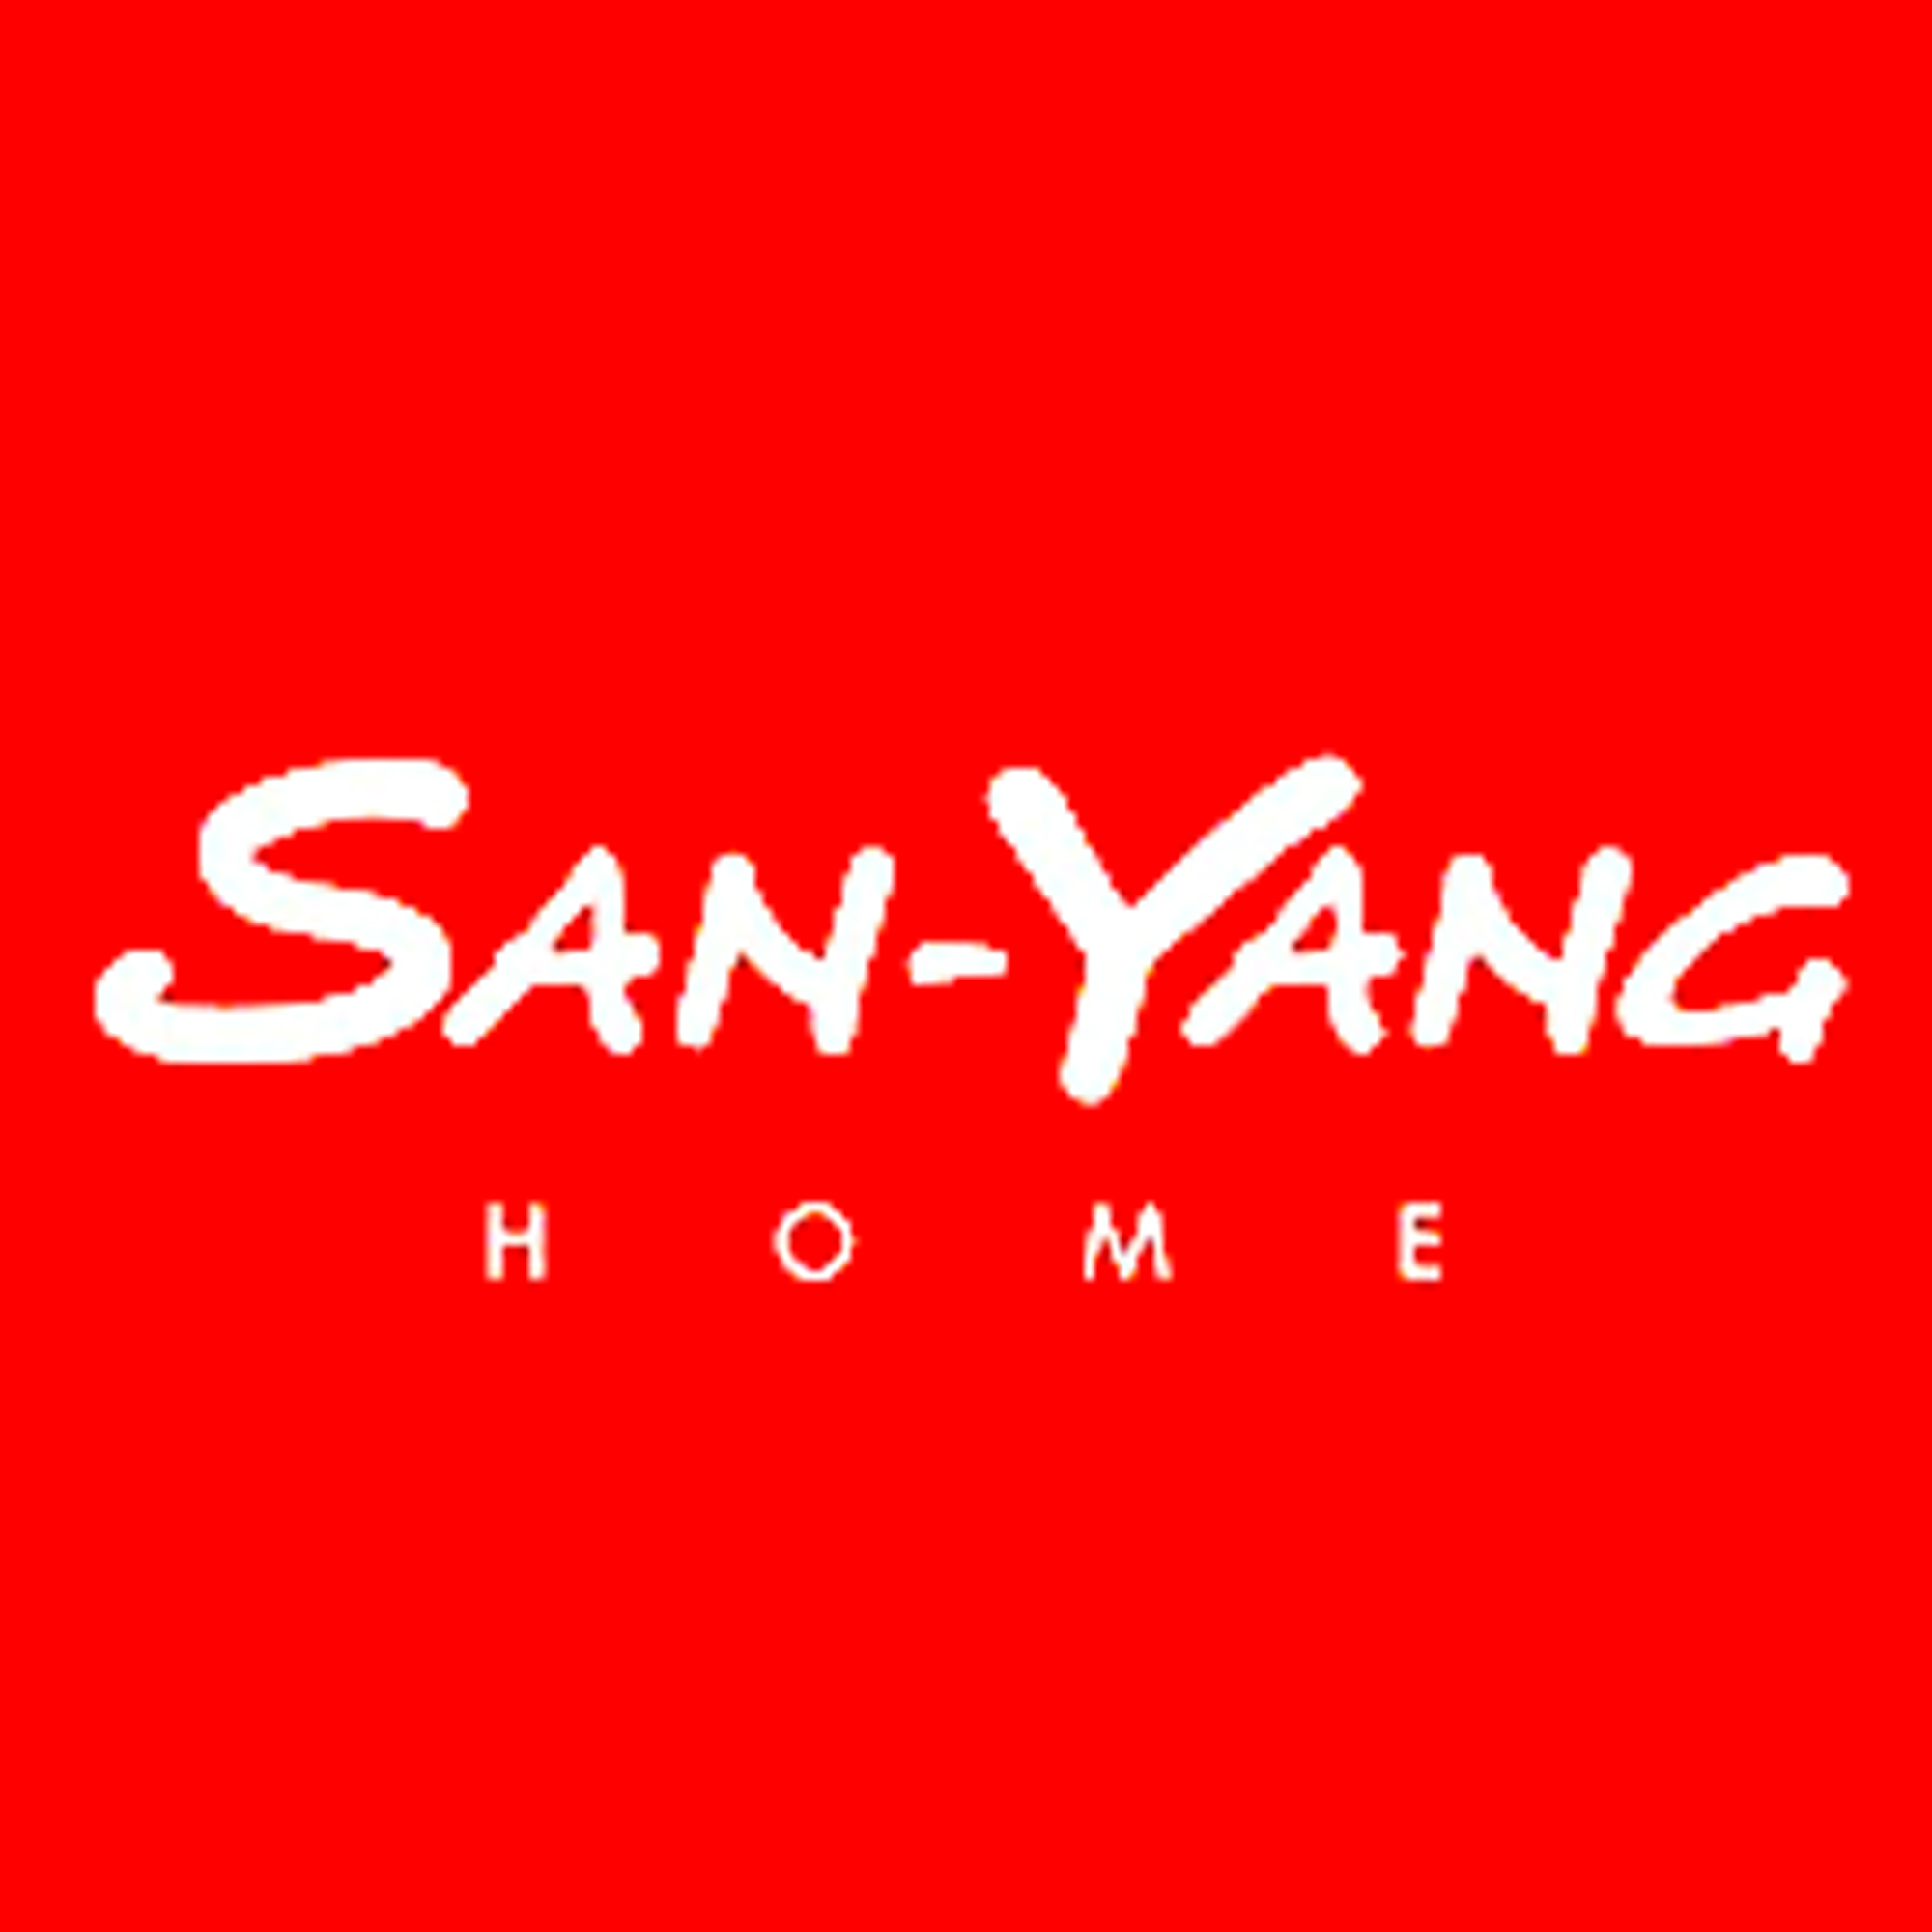 San-Yang